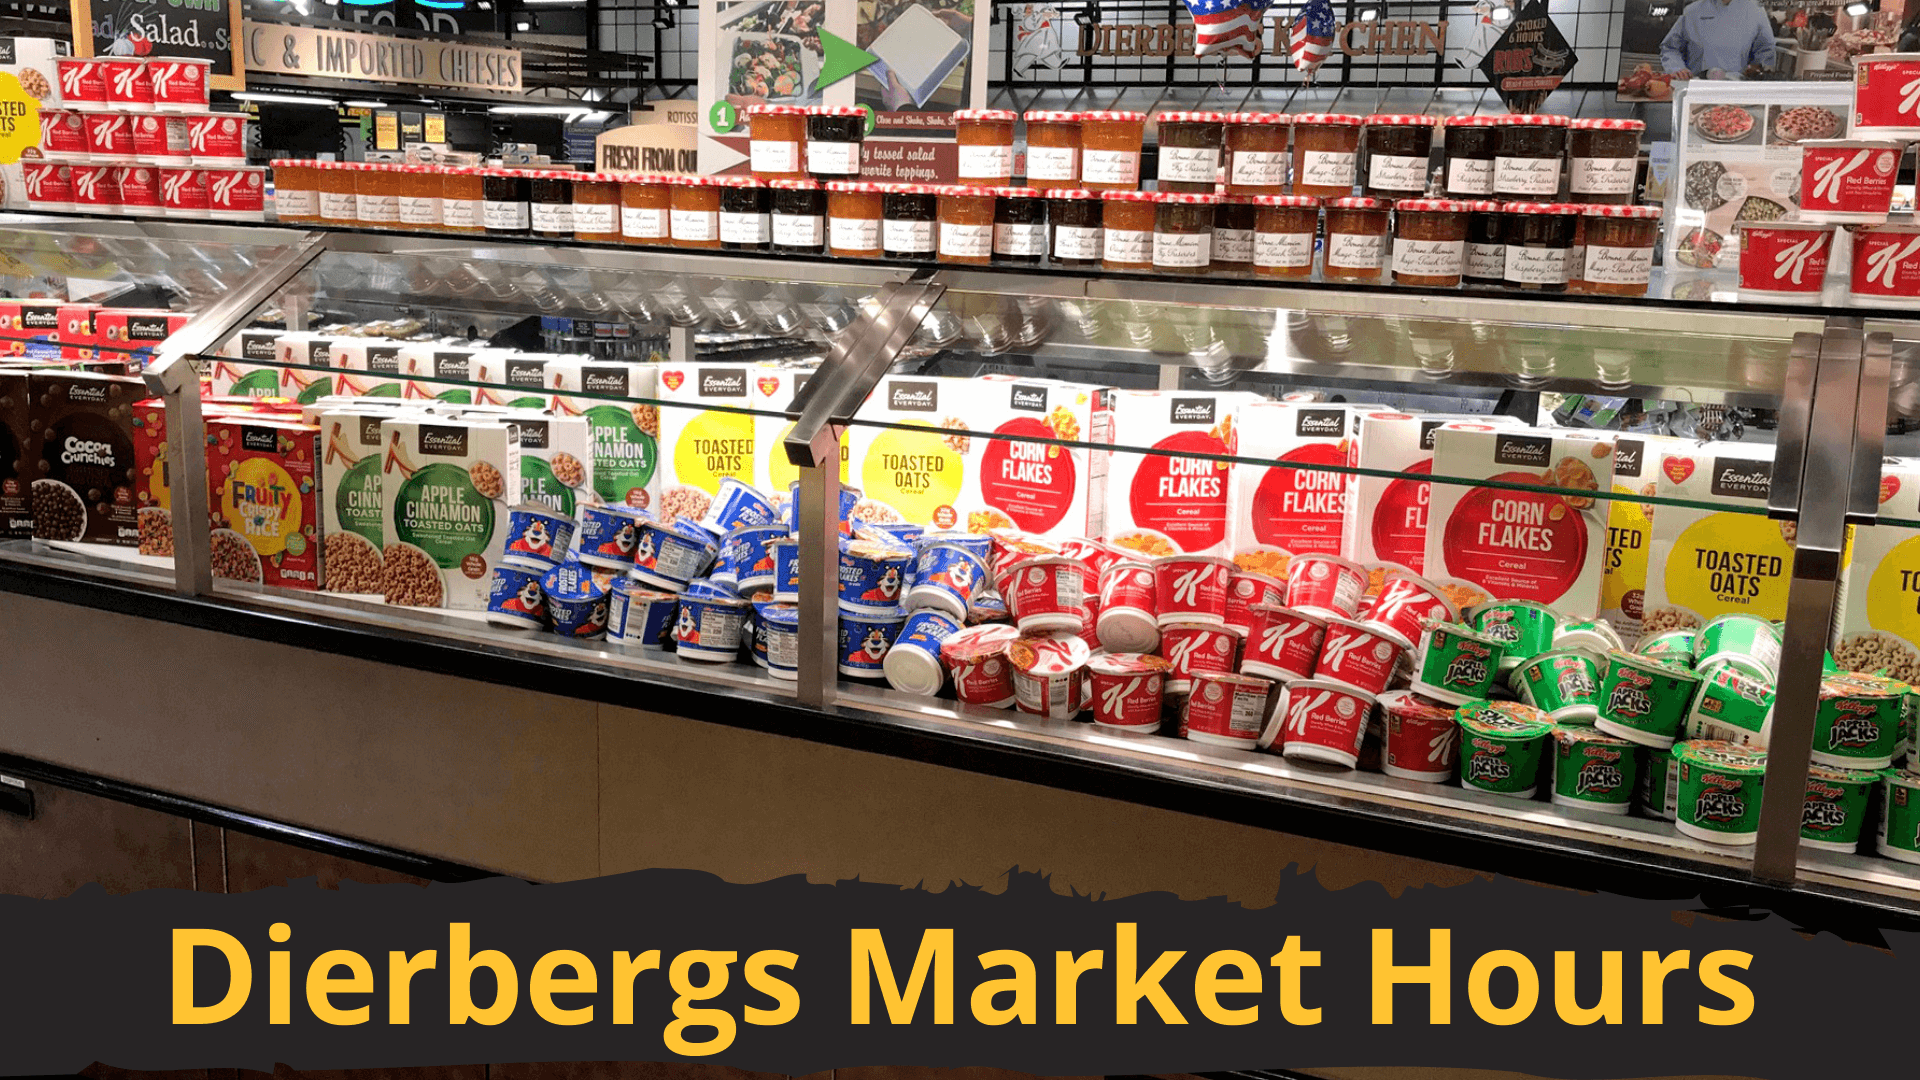 Dierbergs Market Hours